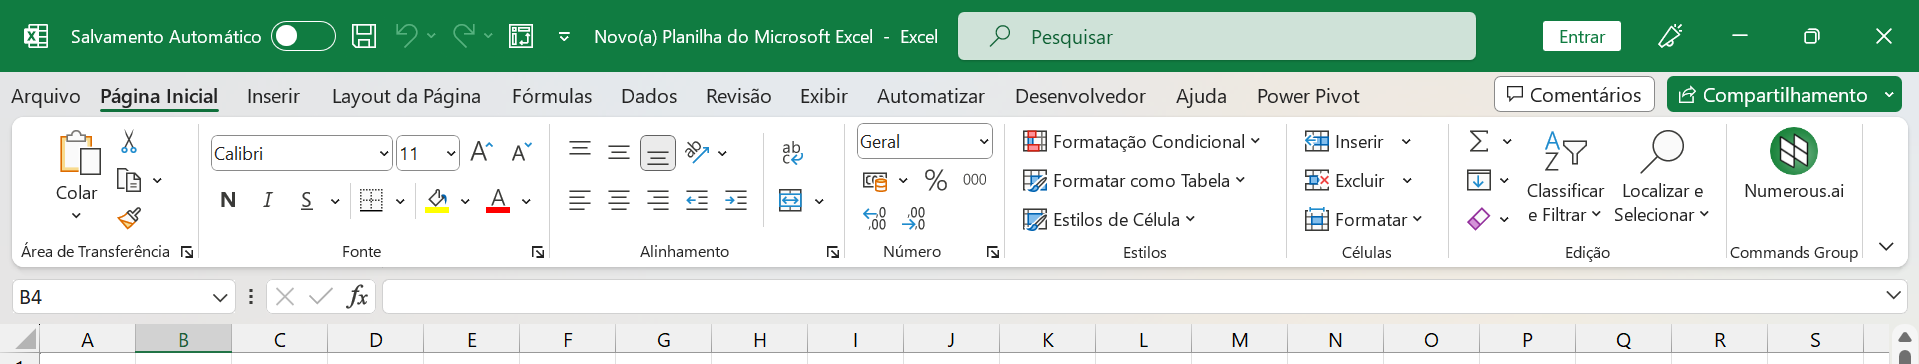 Faixa de Opções no Excel